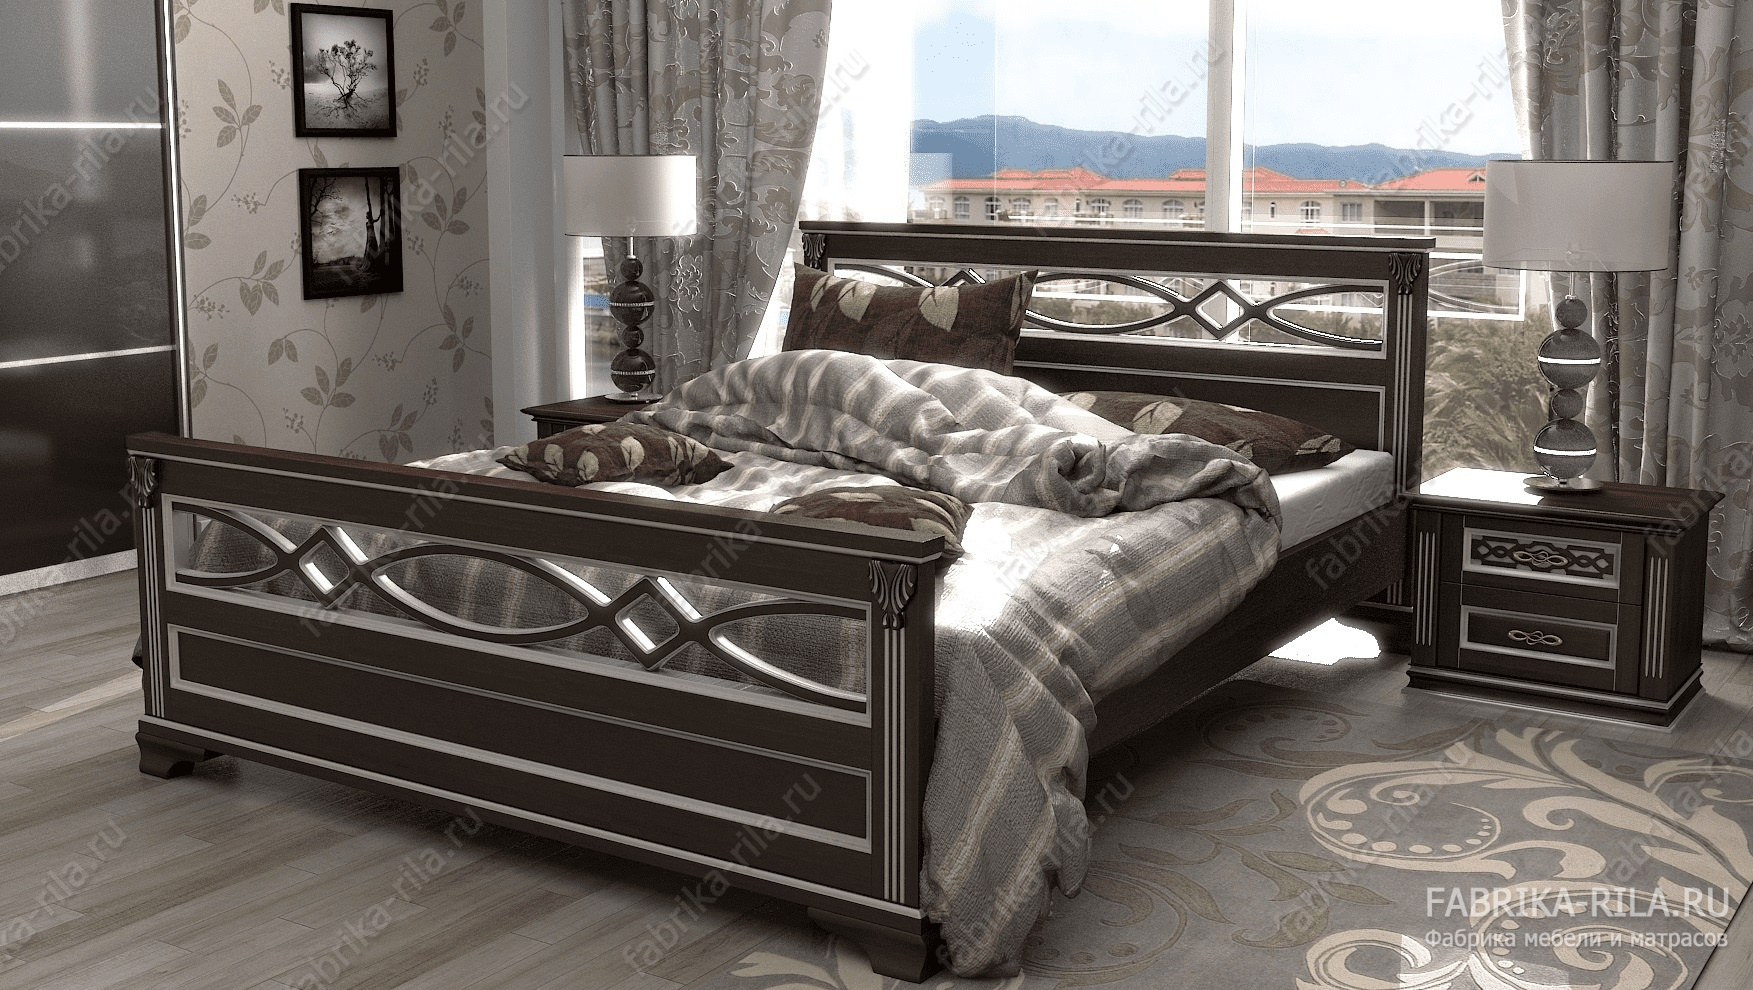 Кровать Lirоna 1 — 160x190 см. из сосны